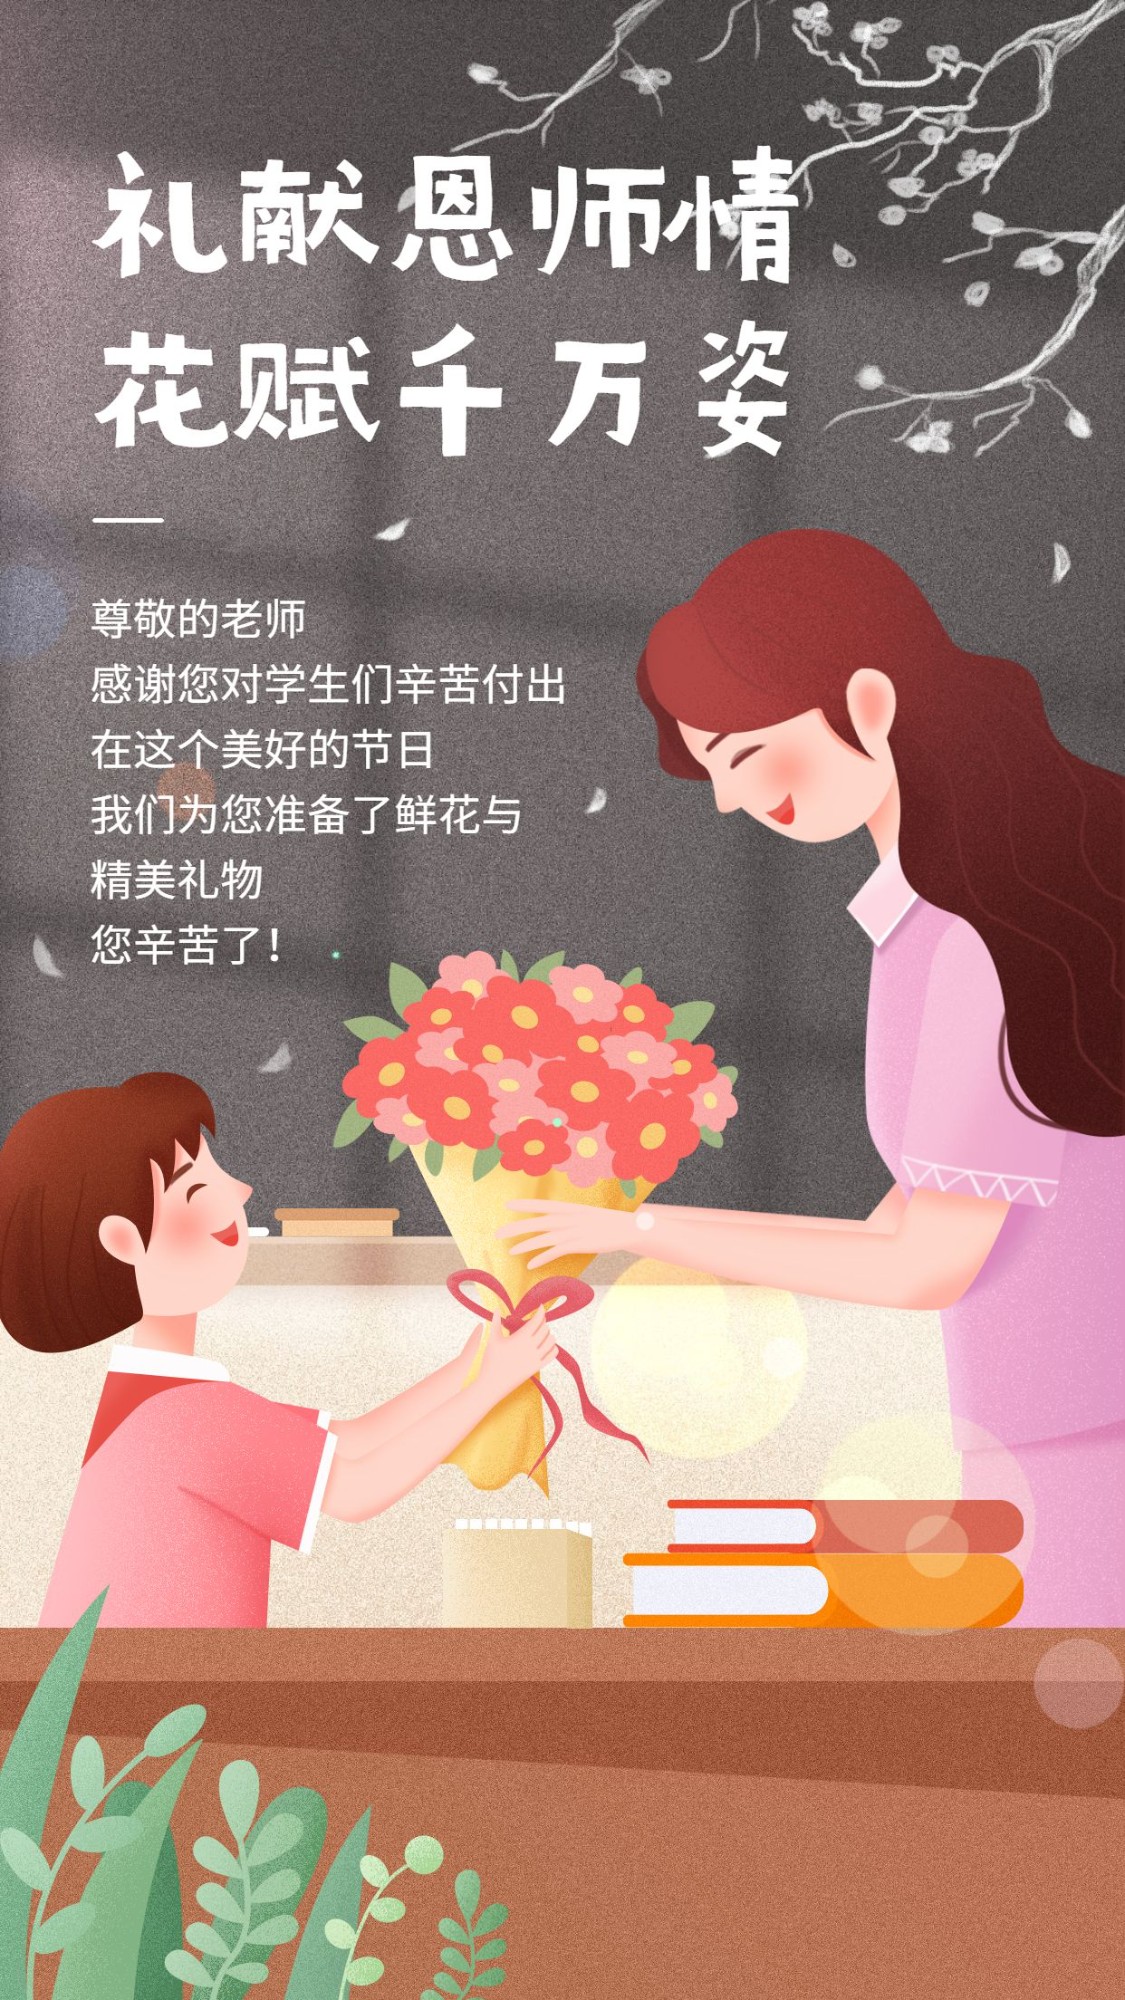 教师节节日祝福手绘海报